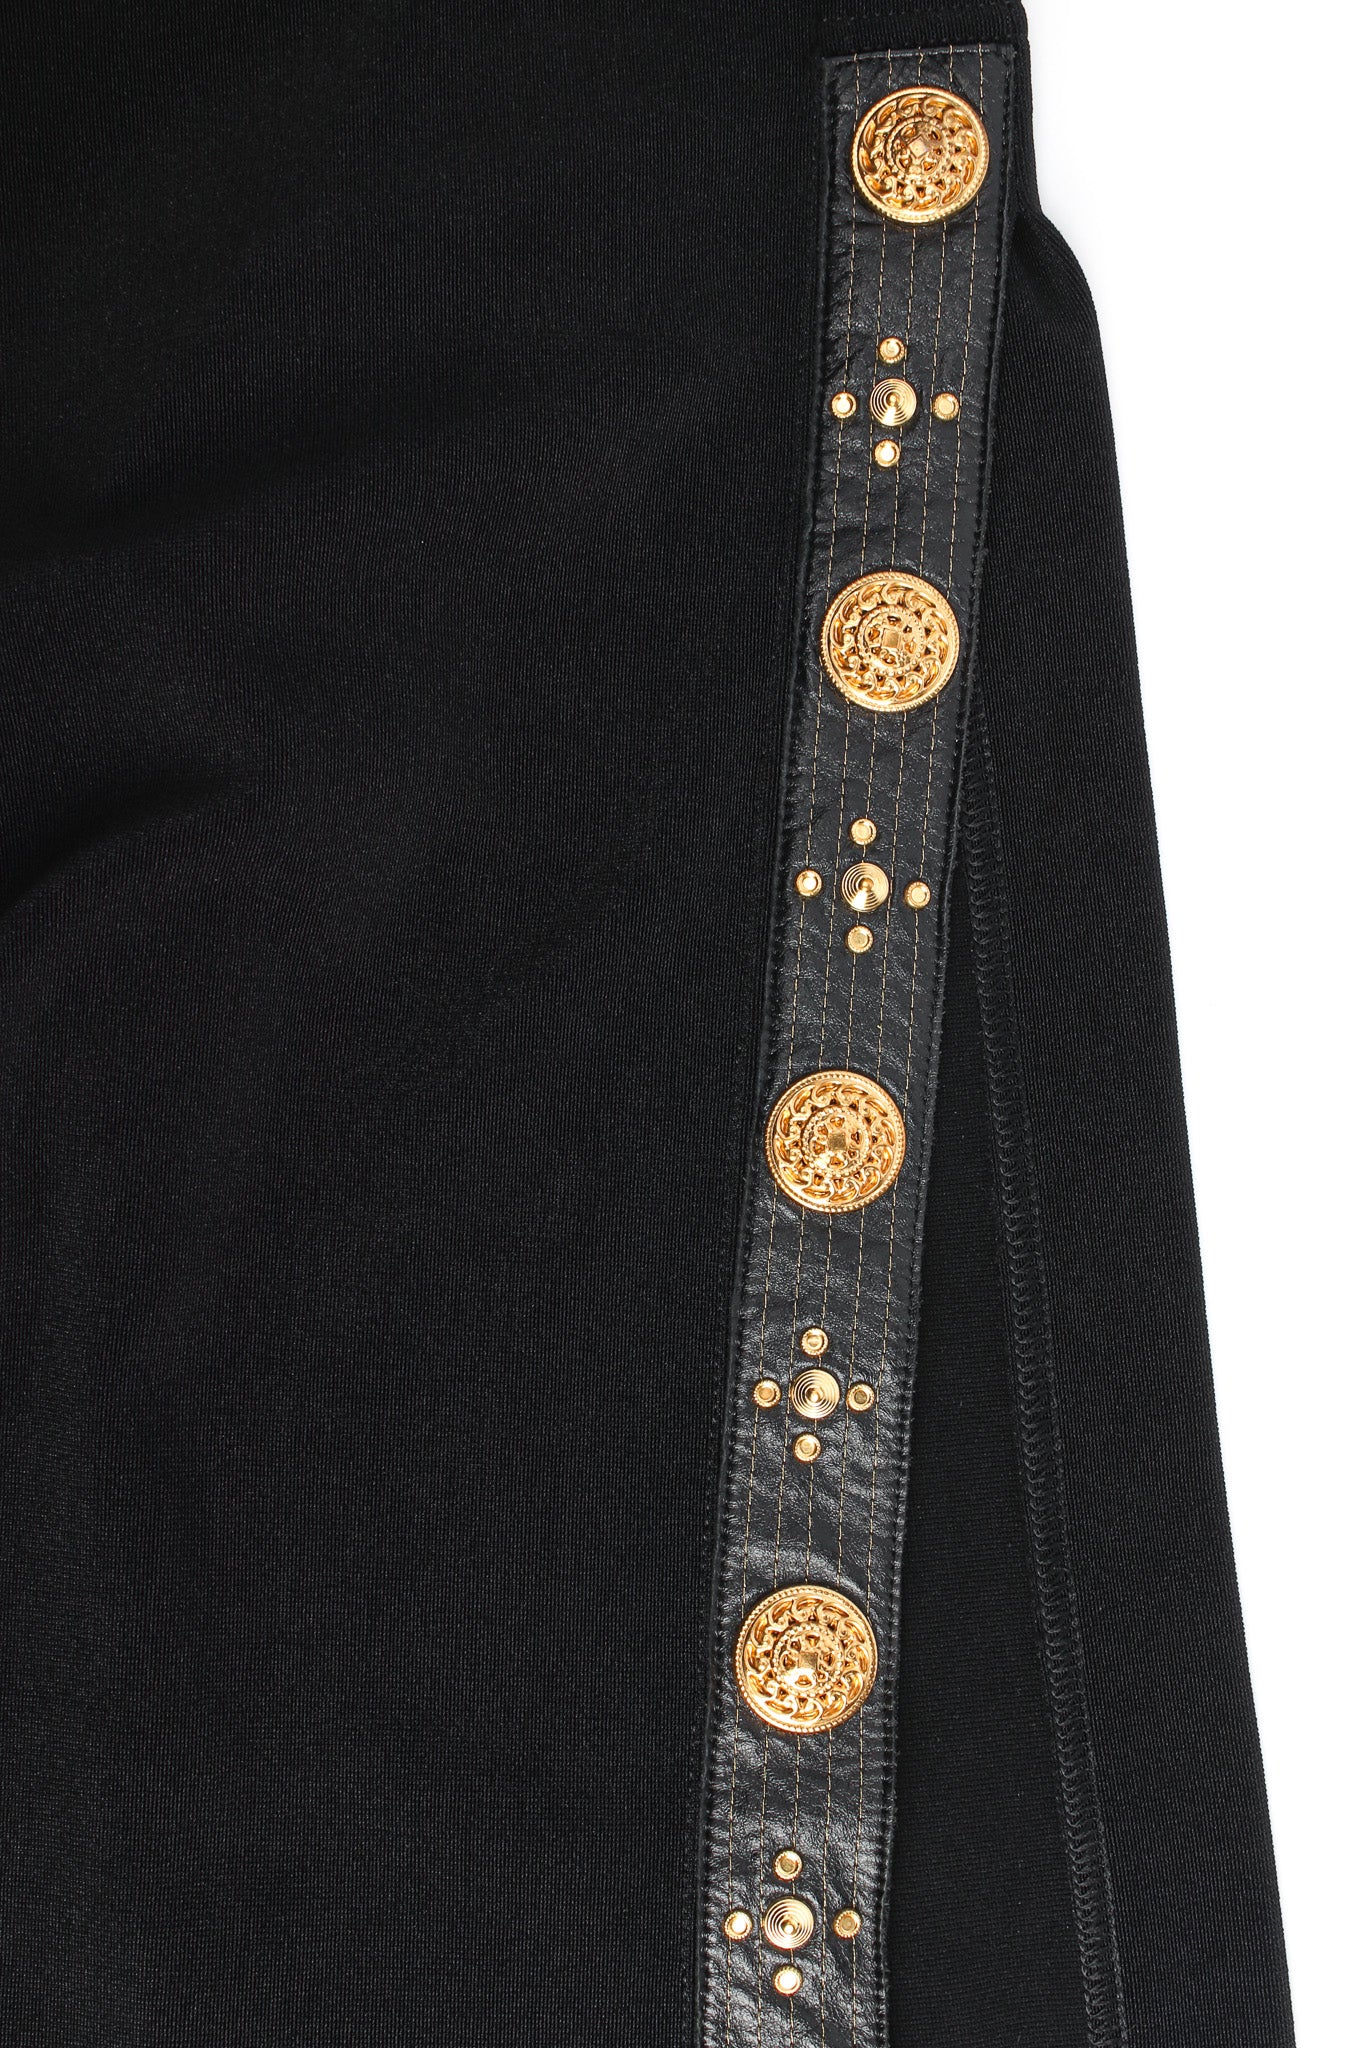 Vintage Caché Lion Emblem & Coin Bodycon Dress side slit panel @ Recess LA